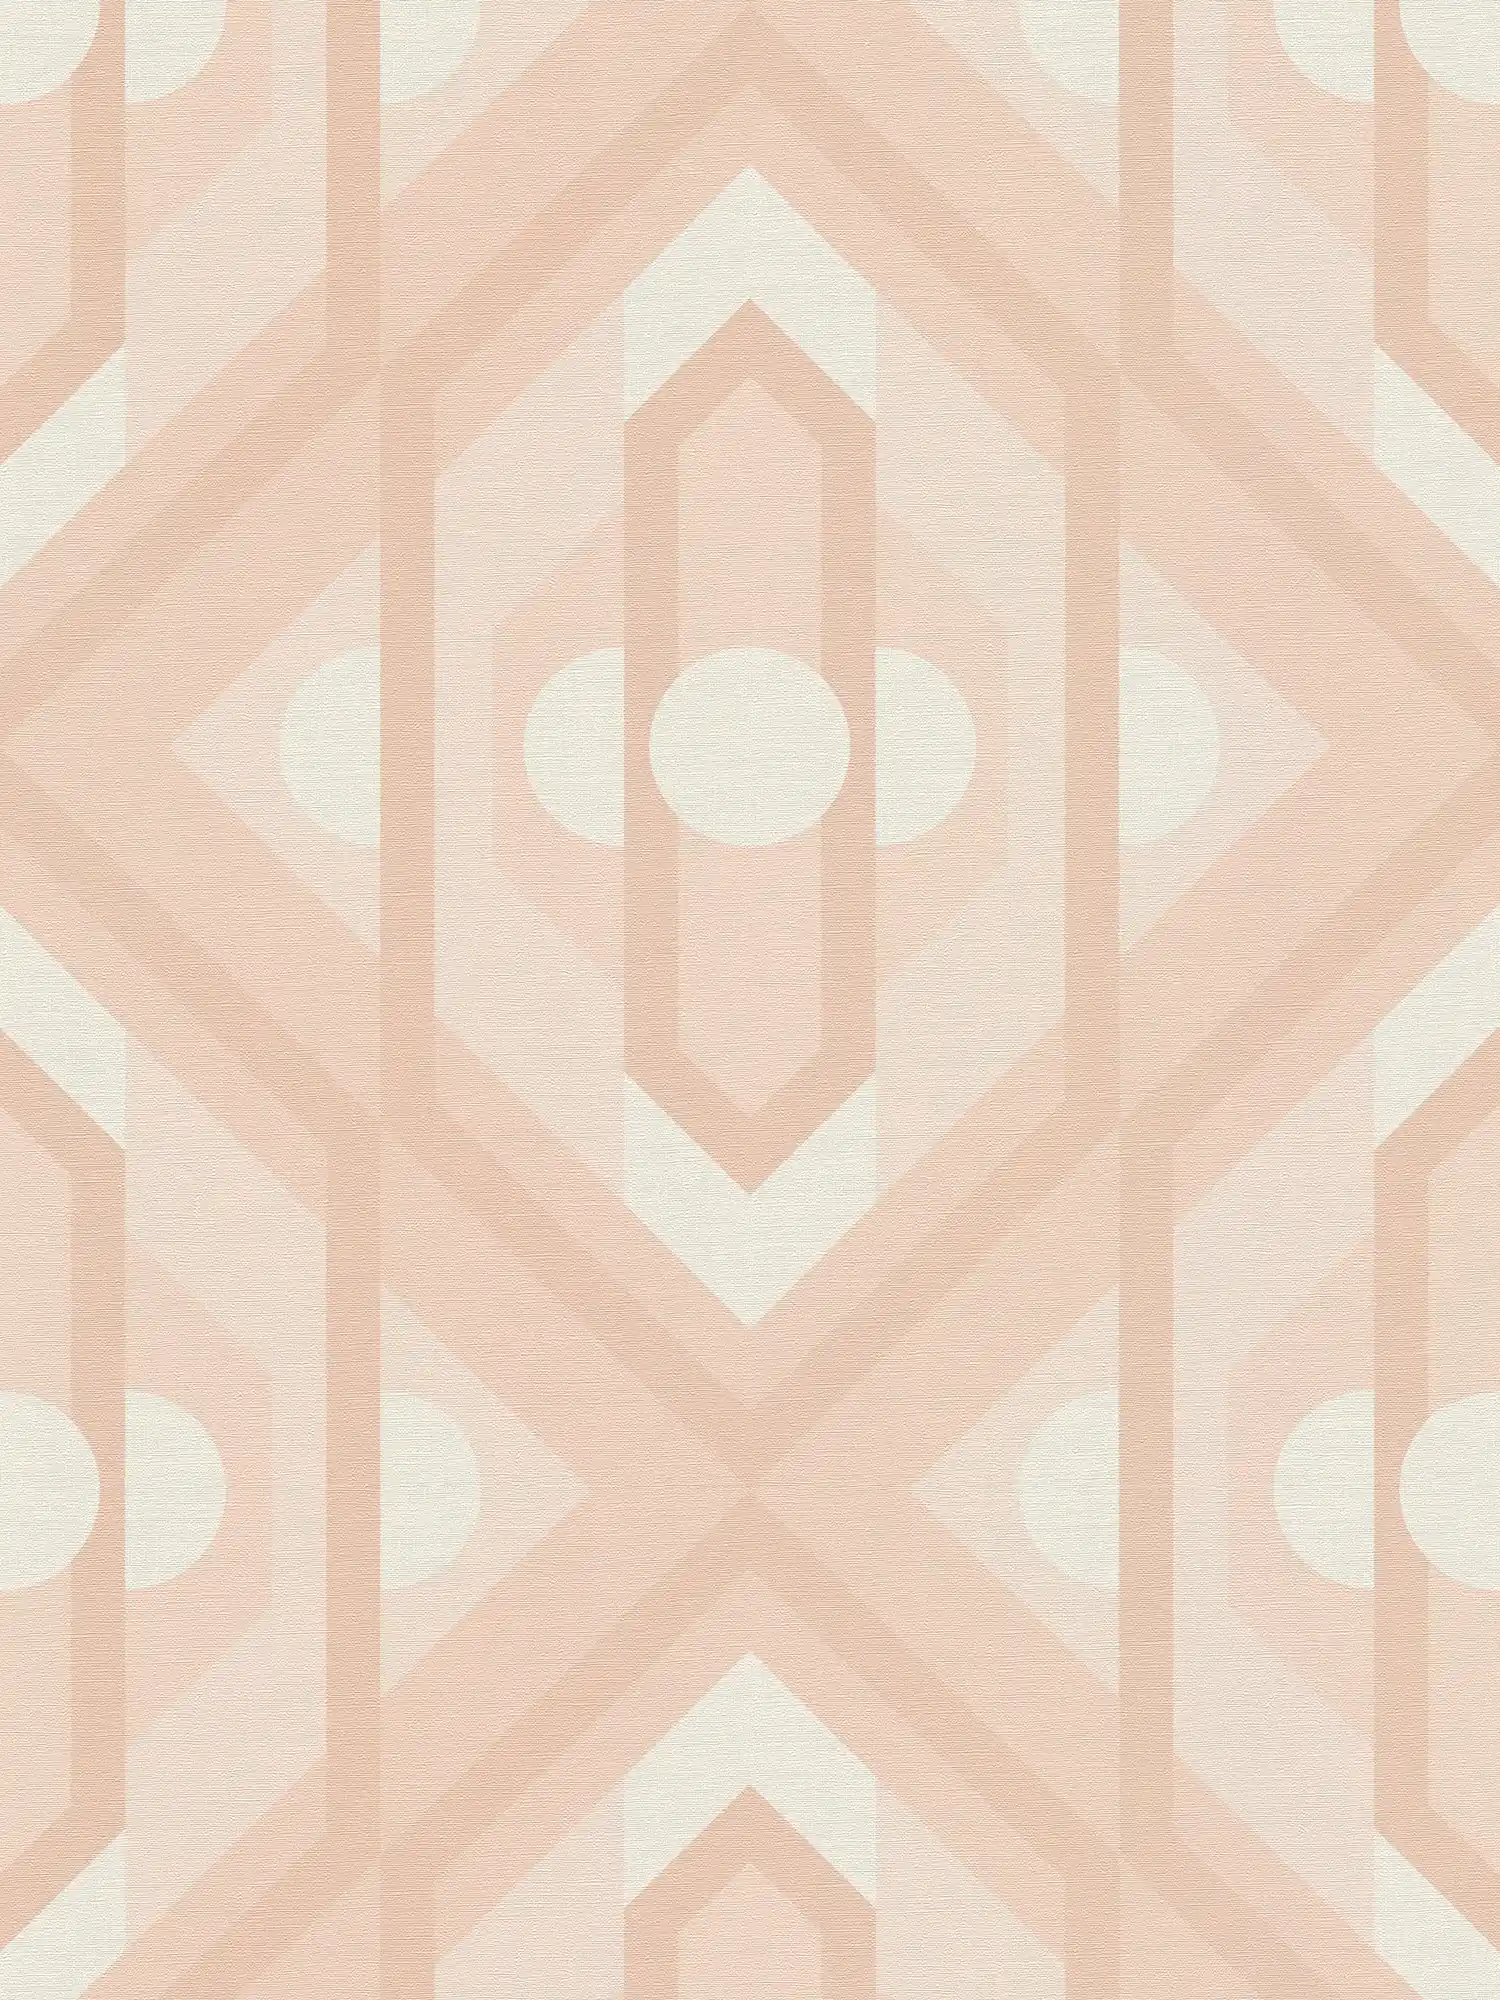 Retro wallpaper with geometric ornaments in soft colours - beige, cream, white
